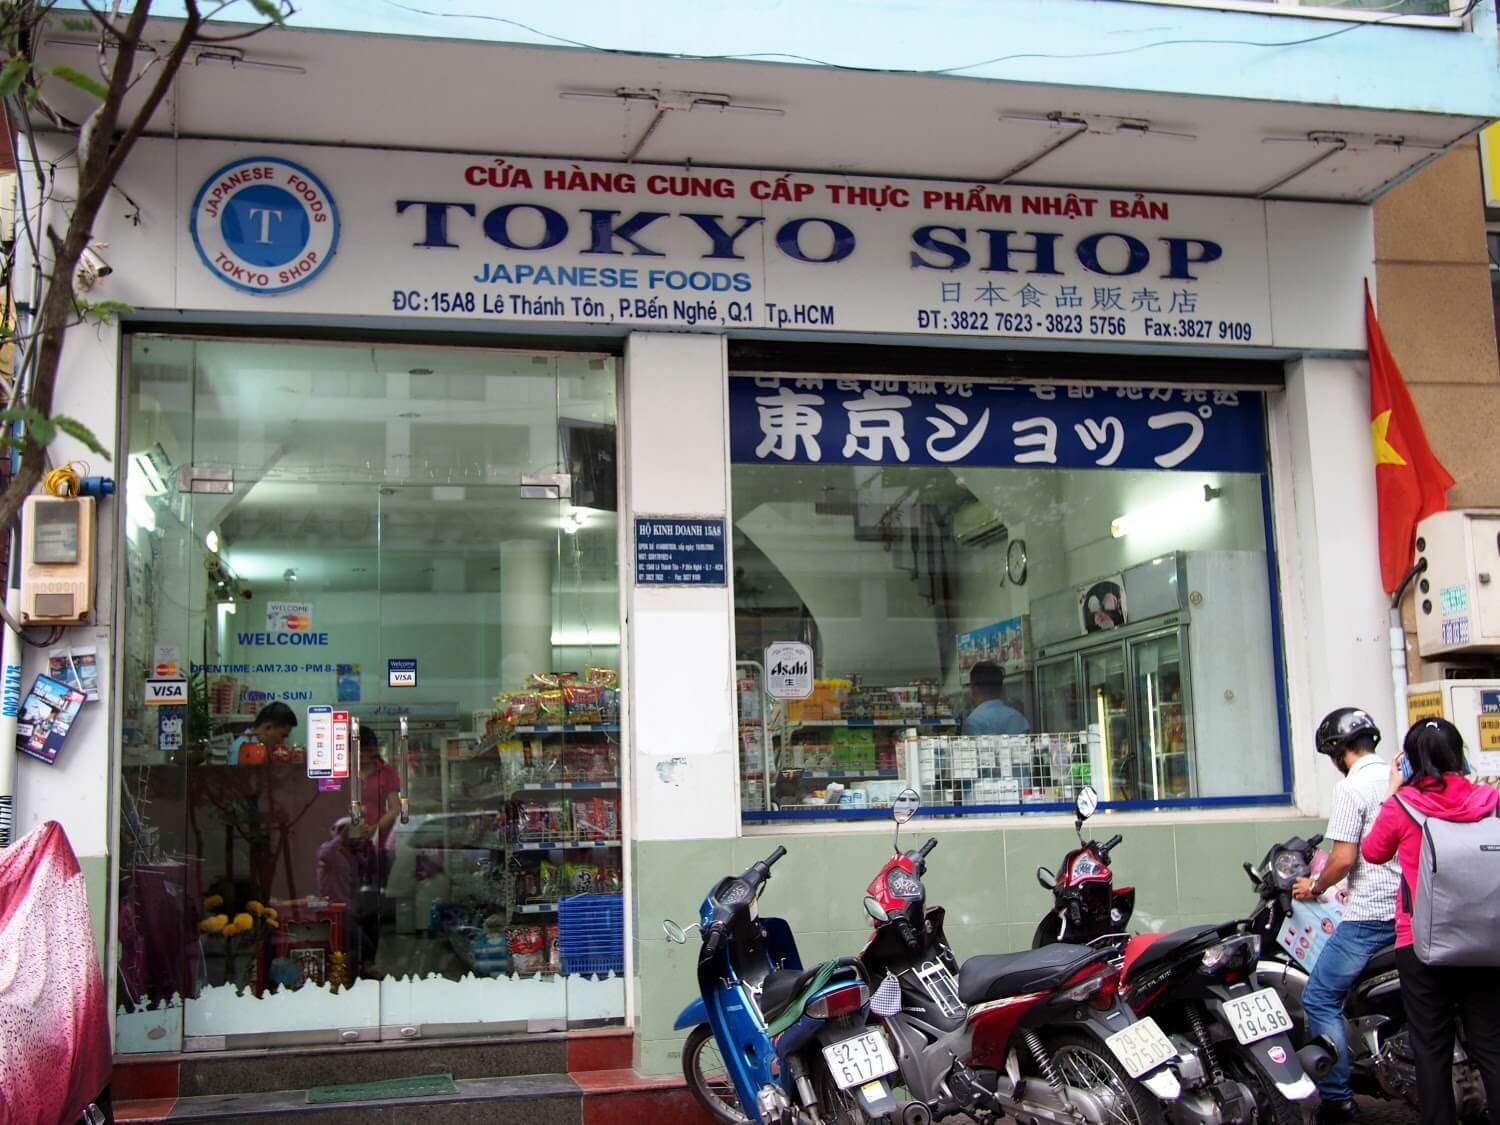 Tokyo Shop (thực phẩm Nhật Bản)